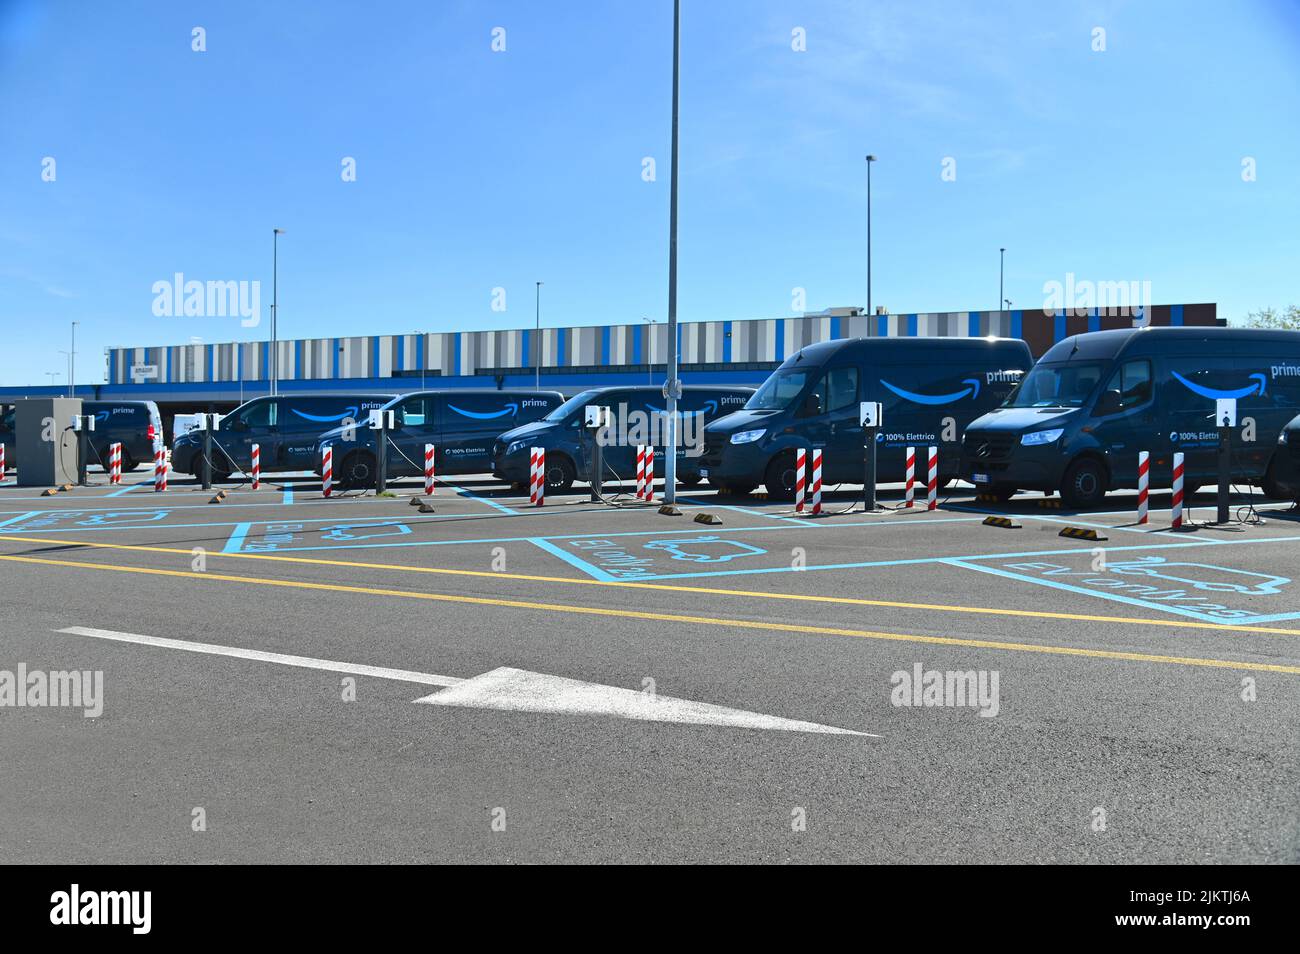 Un gros plan de camionnettes de livraison entièrement électriques garées à la société de commerce électronique amazon à Turin en Italie Banque D'Images